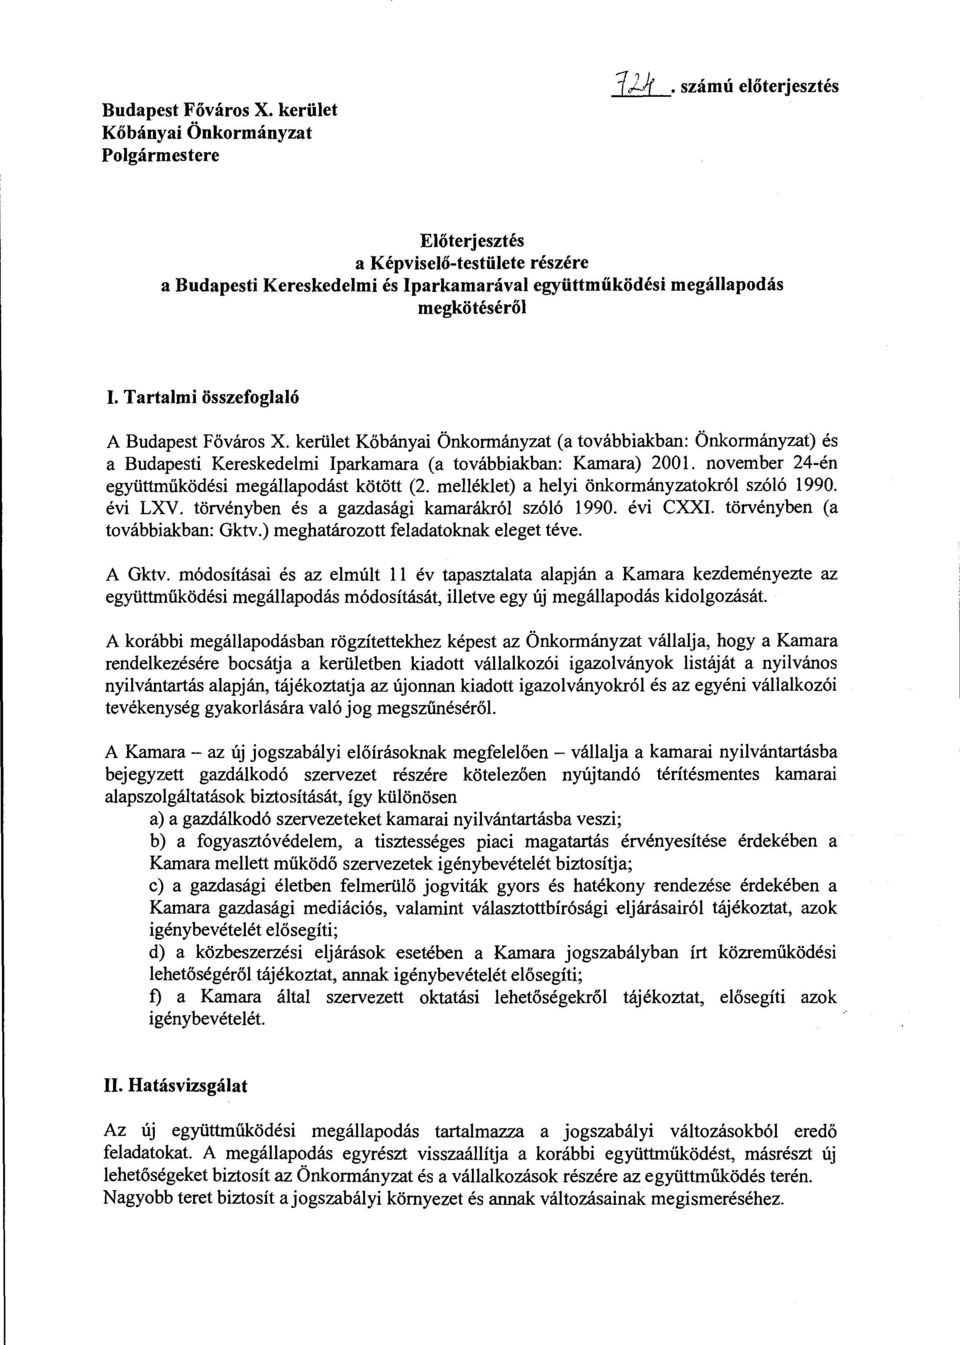 kerület Kőbányai Önkormányzat (a továbbiakban: Önkormányzat) és a Budapesti Kereskedelmi Iparkamara (a továbbiakban: Kamara) 2001. november 24-én együttműködési megállapodást kötött (2.